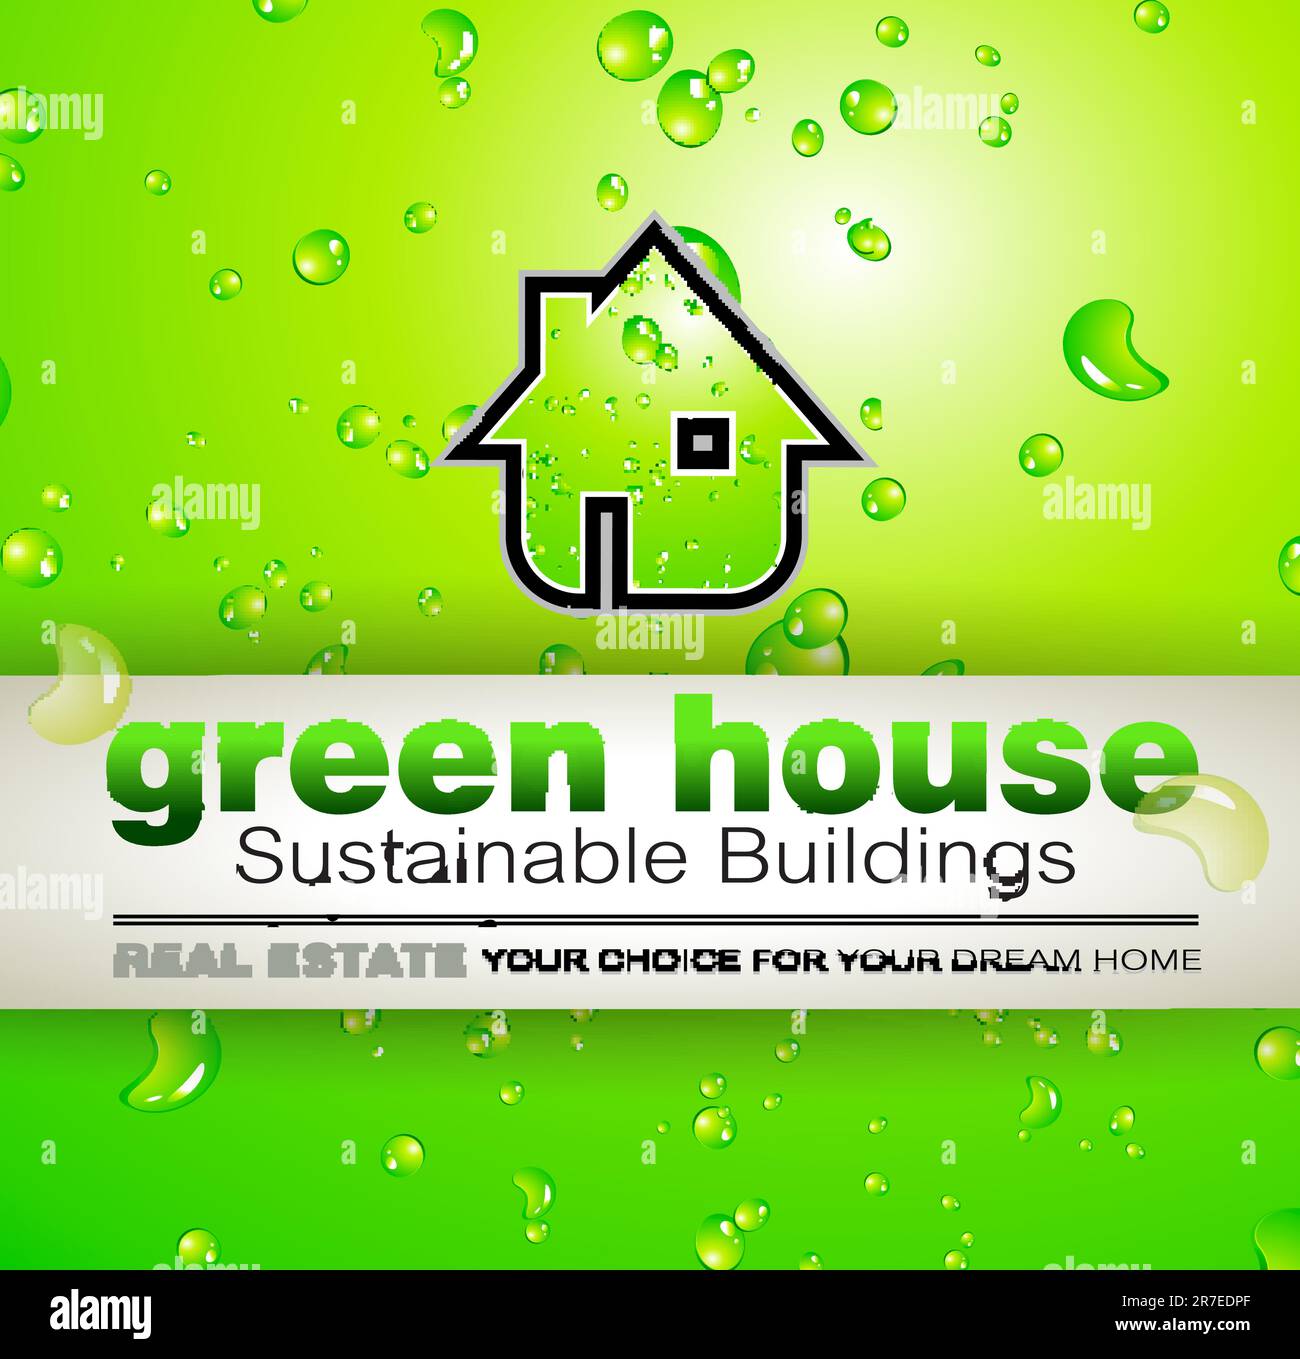 Green Real Estate eau gouttes de fond pour la publicité des bio-maisons disponibles ou des bâtiments écologiques à vendre. L'ombre est transparente. Illustration de Vecteur